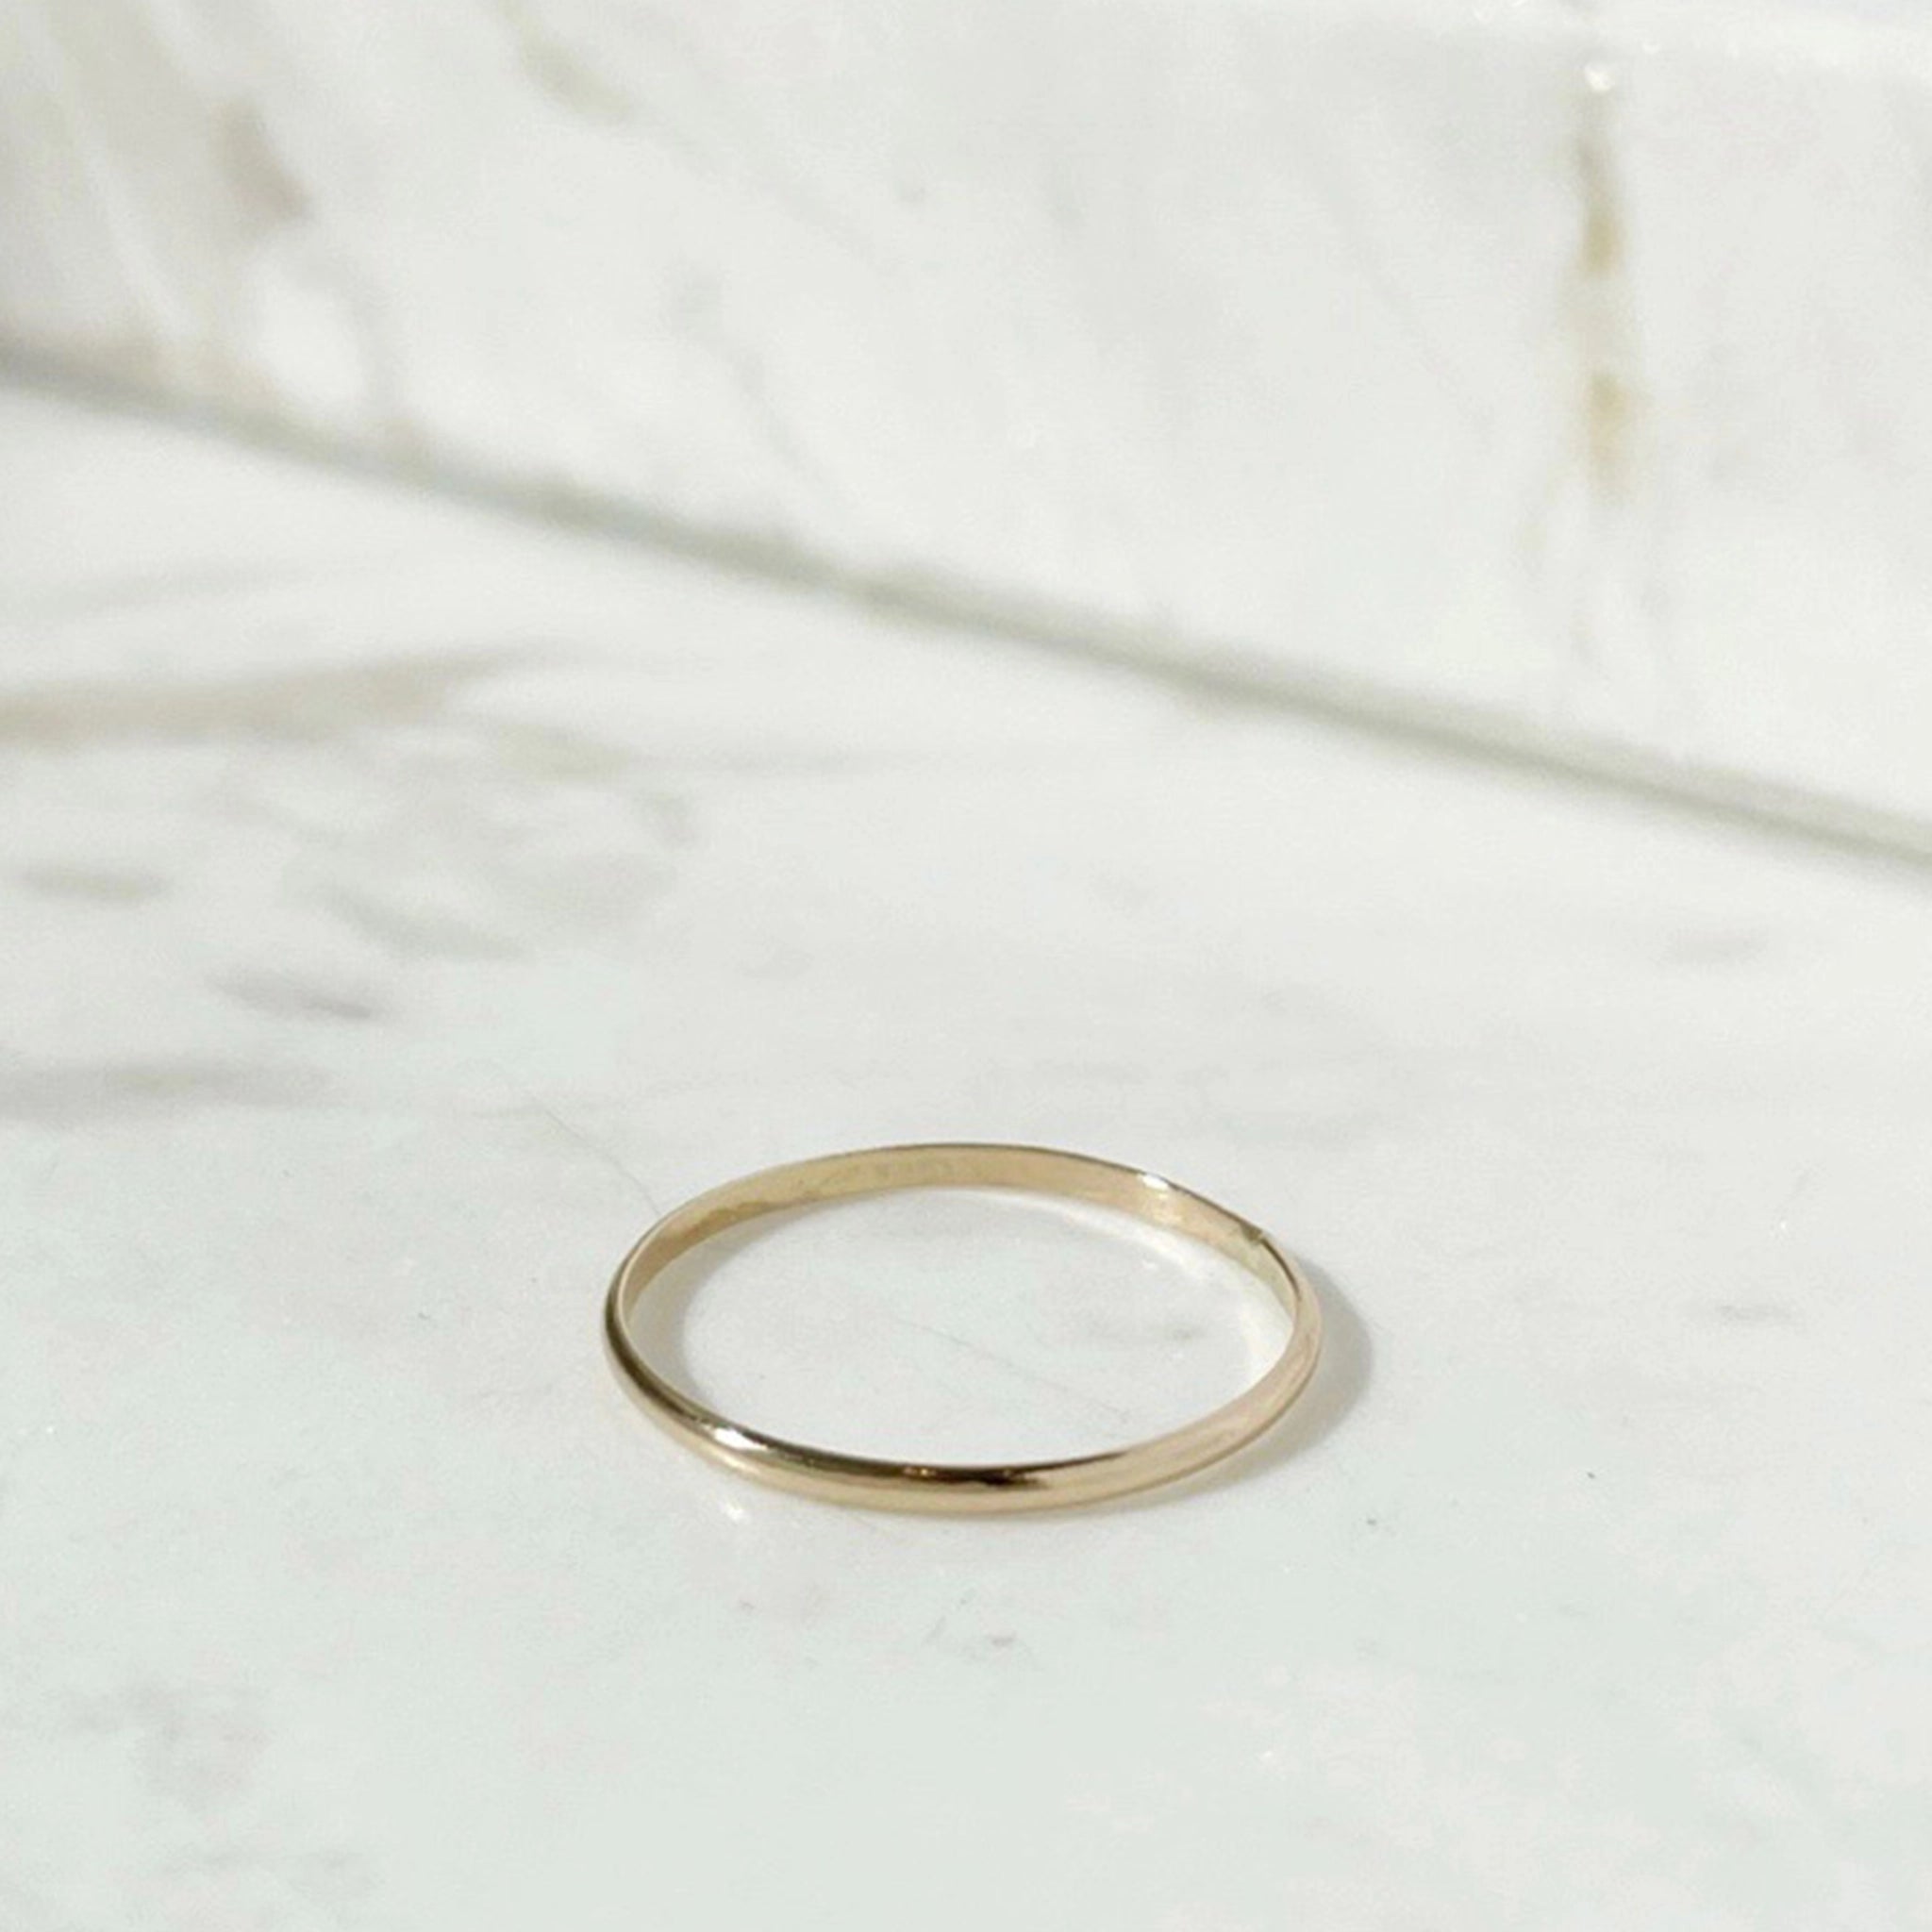 A minimal gold band ring. 